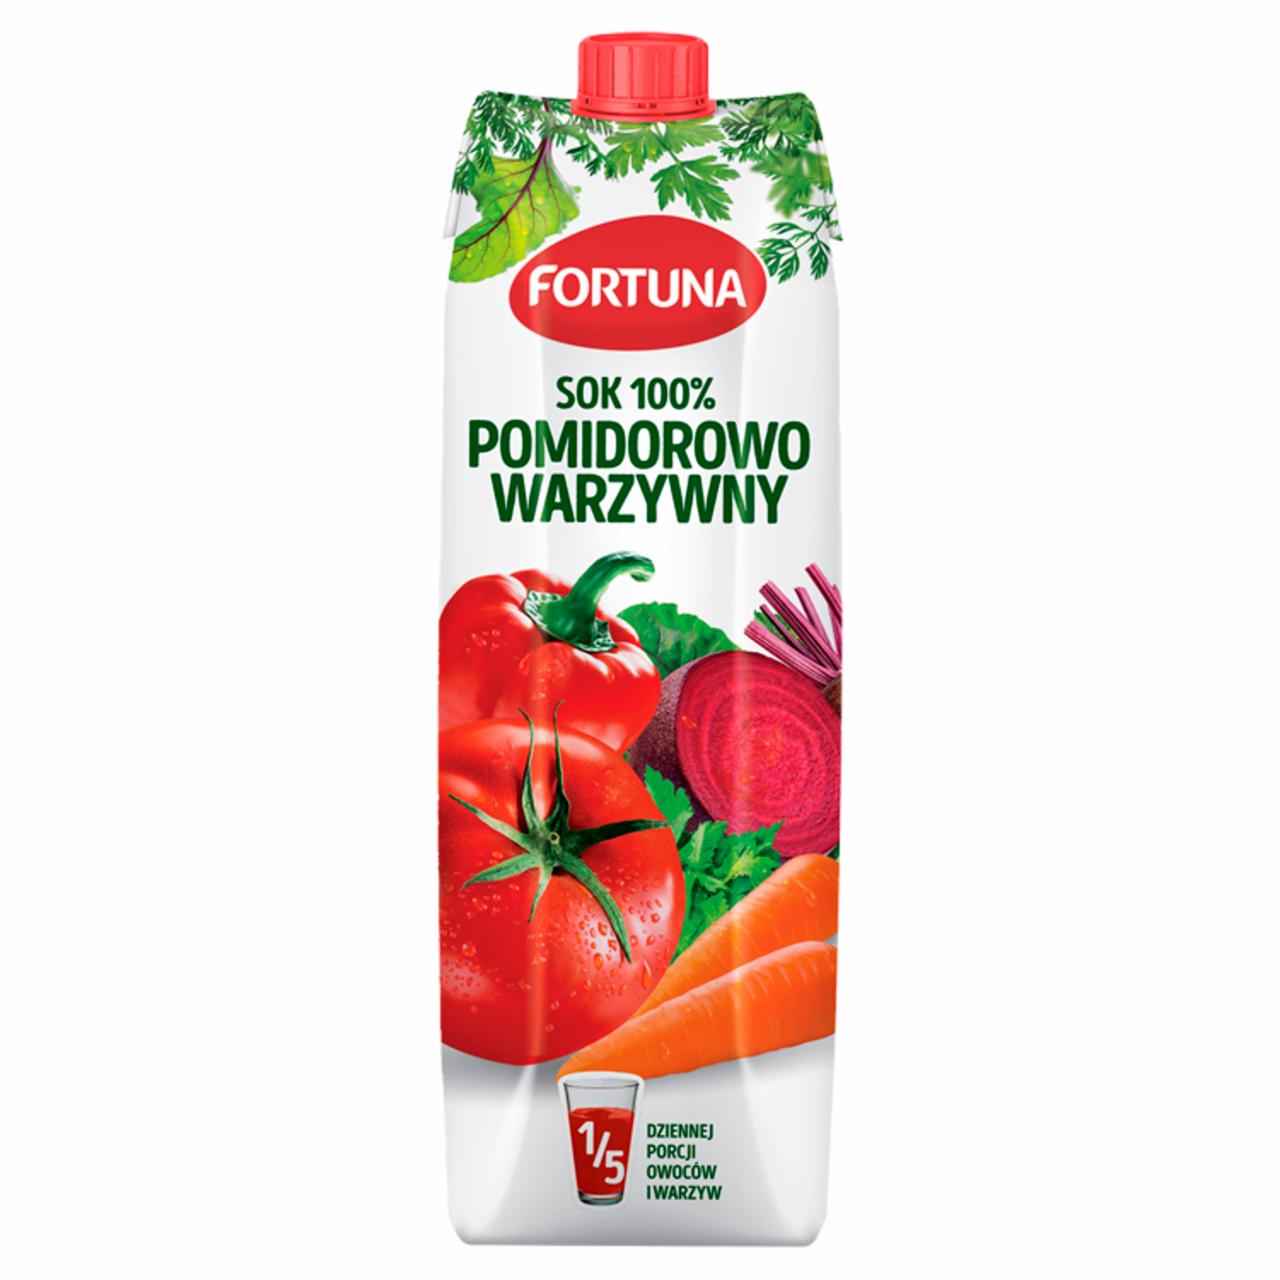 Zdjęcia - Fortuna Sok 100% pomidorowo warzywny 1 l